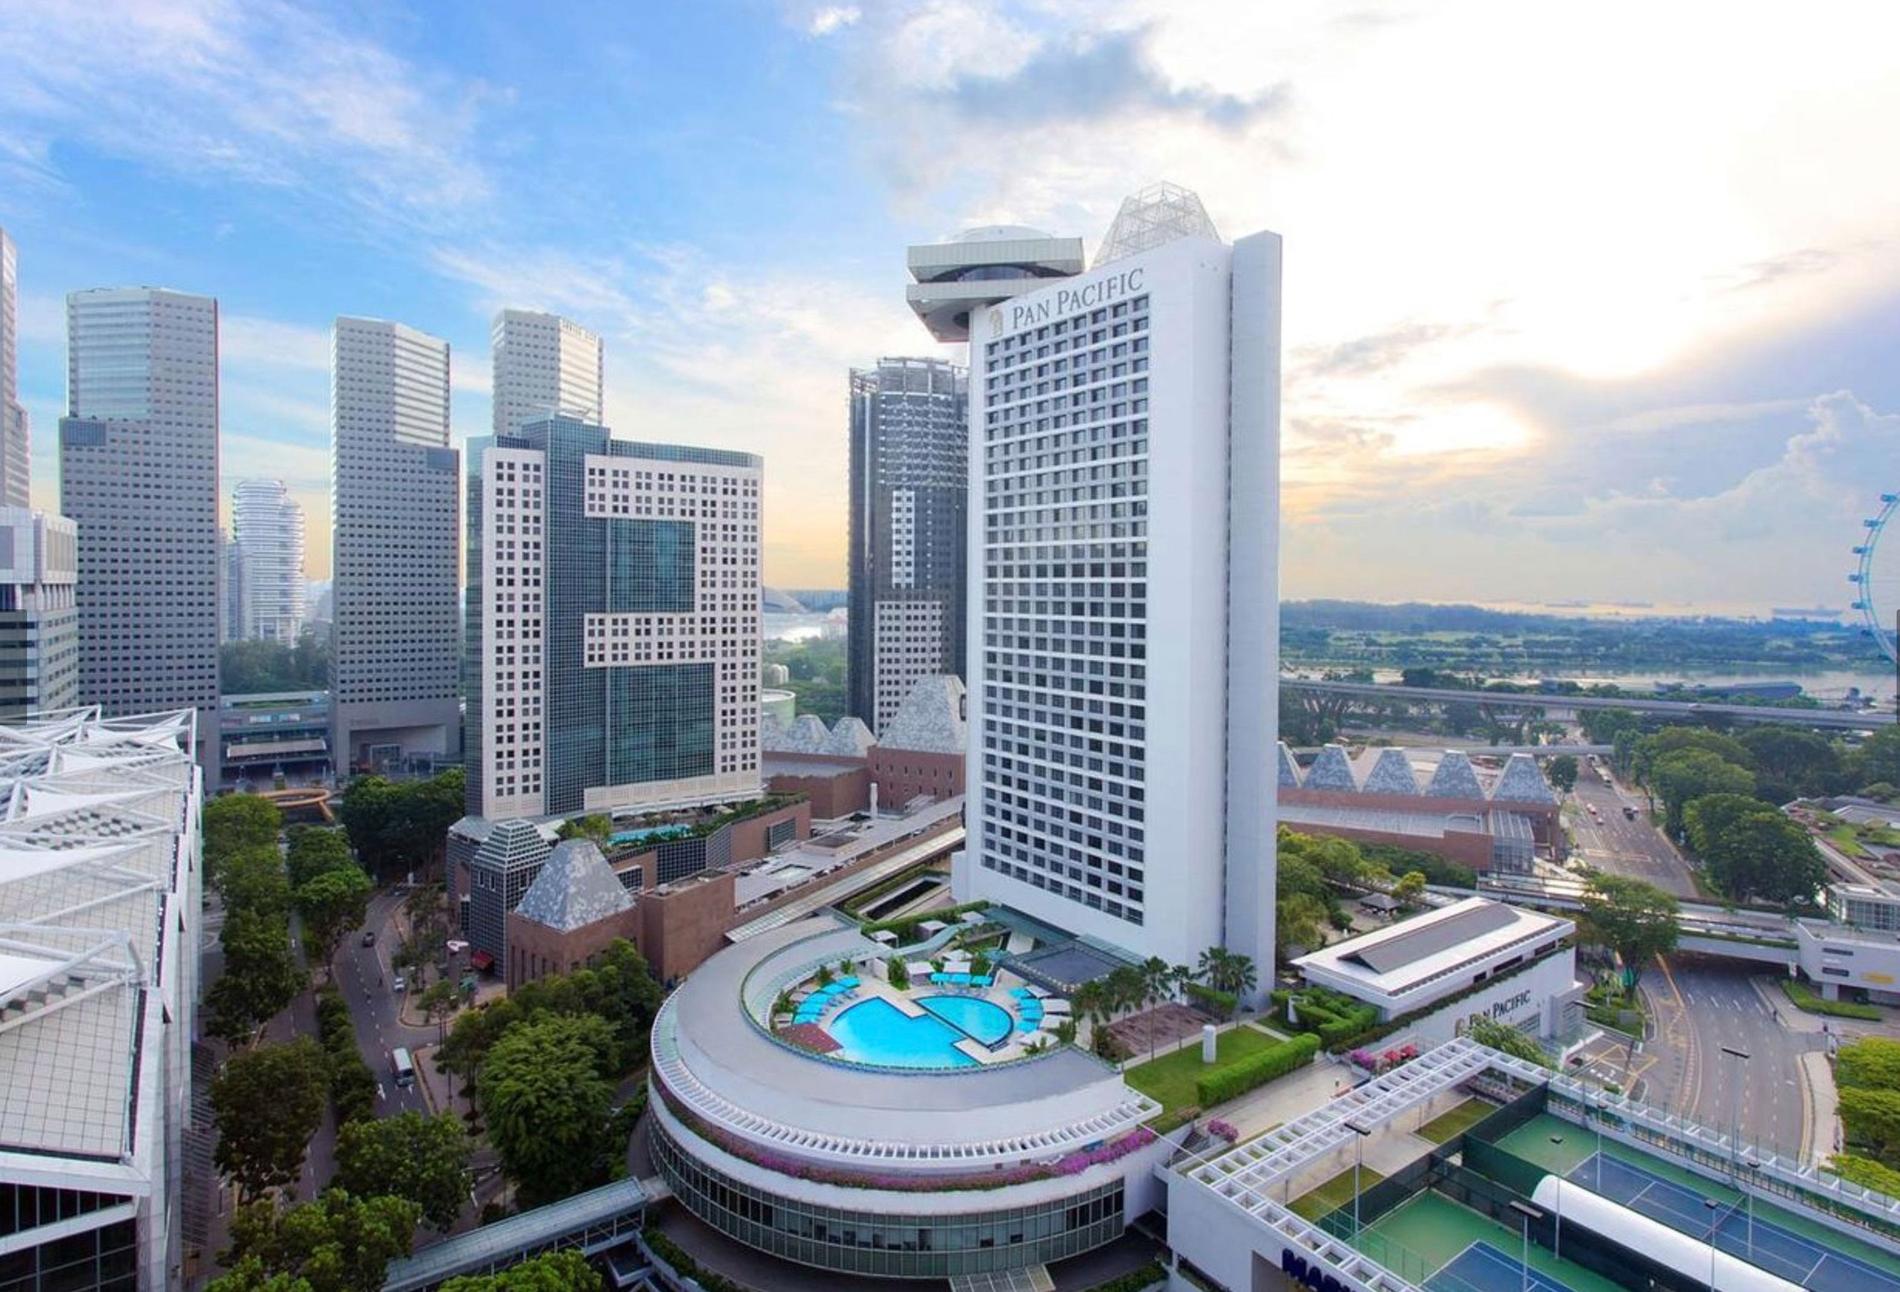 På det femstjärniga lyxhotellet Pan Pacific i Singapore bodde Patrick Reslow i en svit på 79 kvadratmeter med fria kvällsdrinkar.